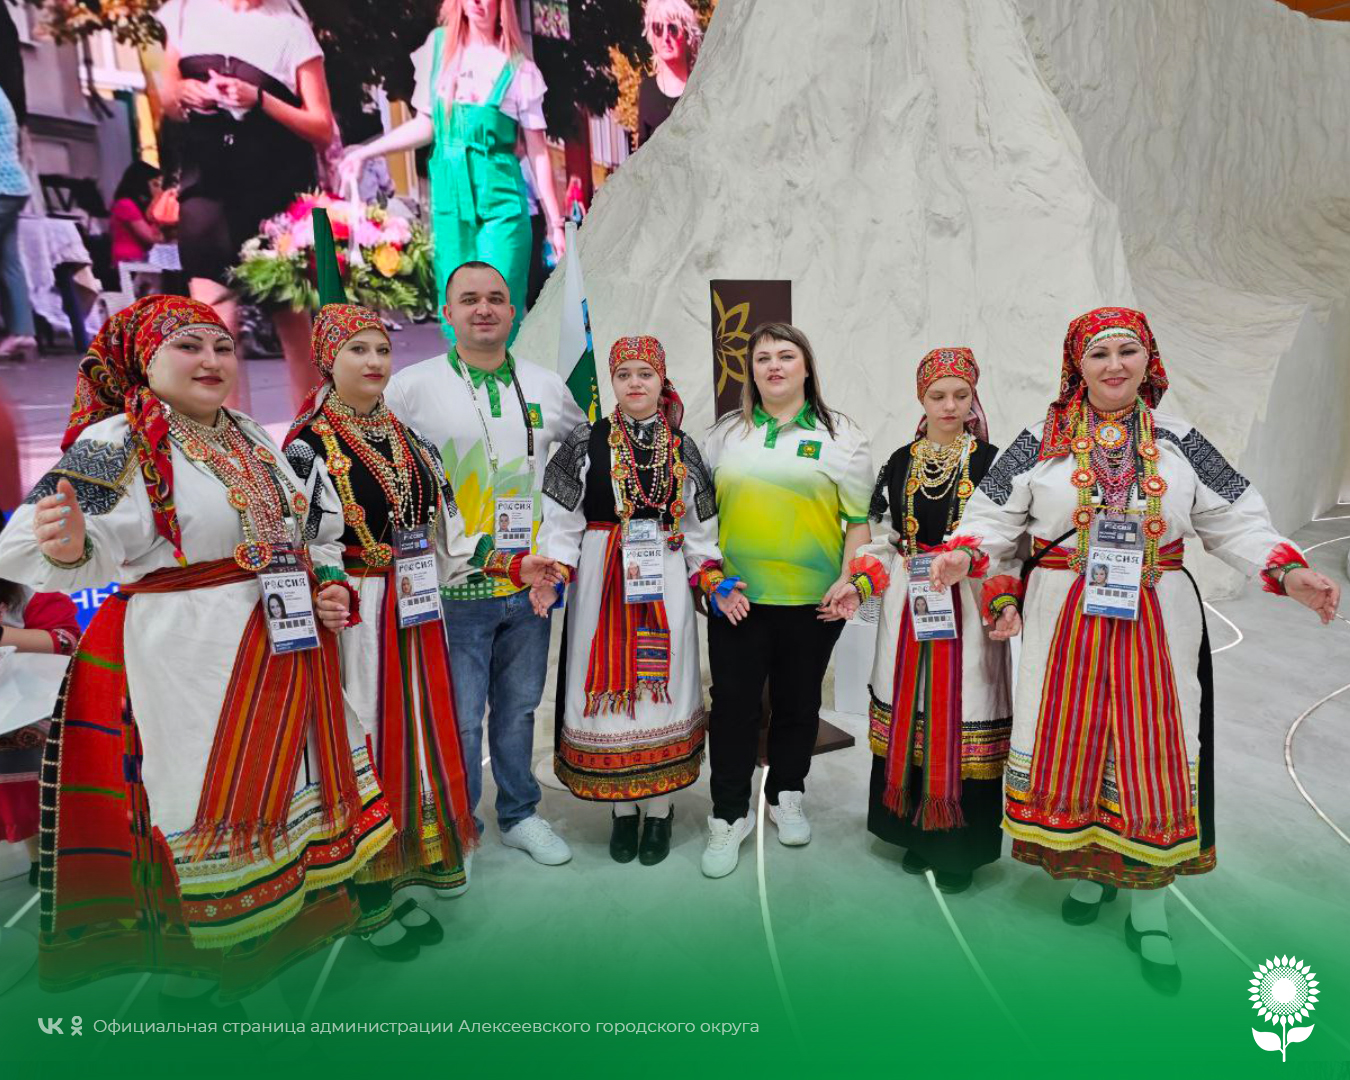 На Международной выставке-форуме «Россия» на ВДНХ проходит второй день Алексеевского городского округа.